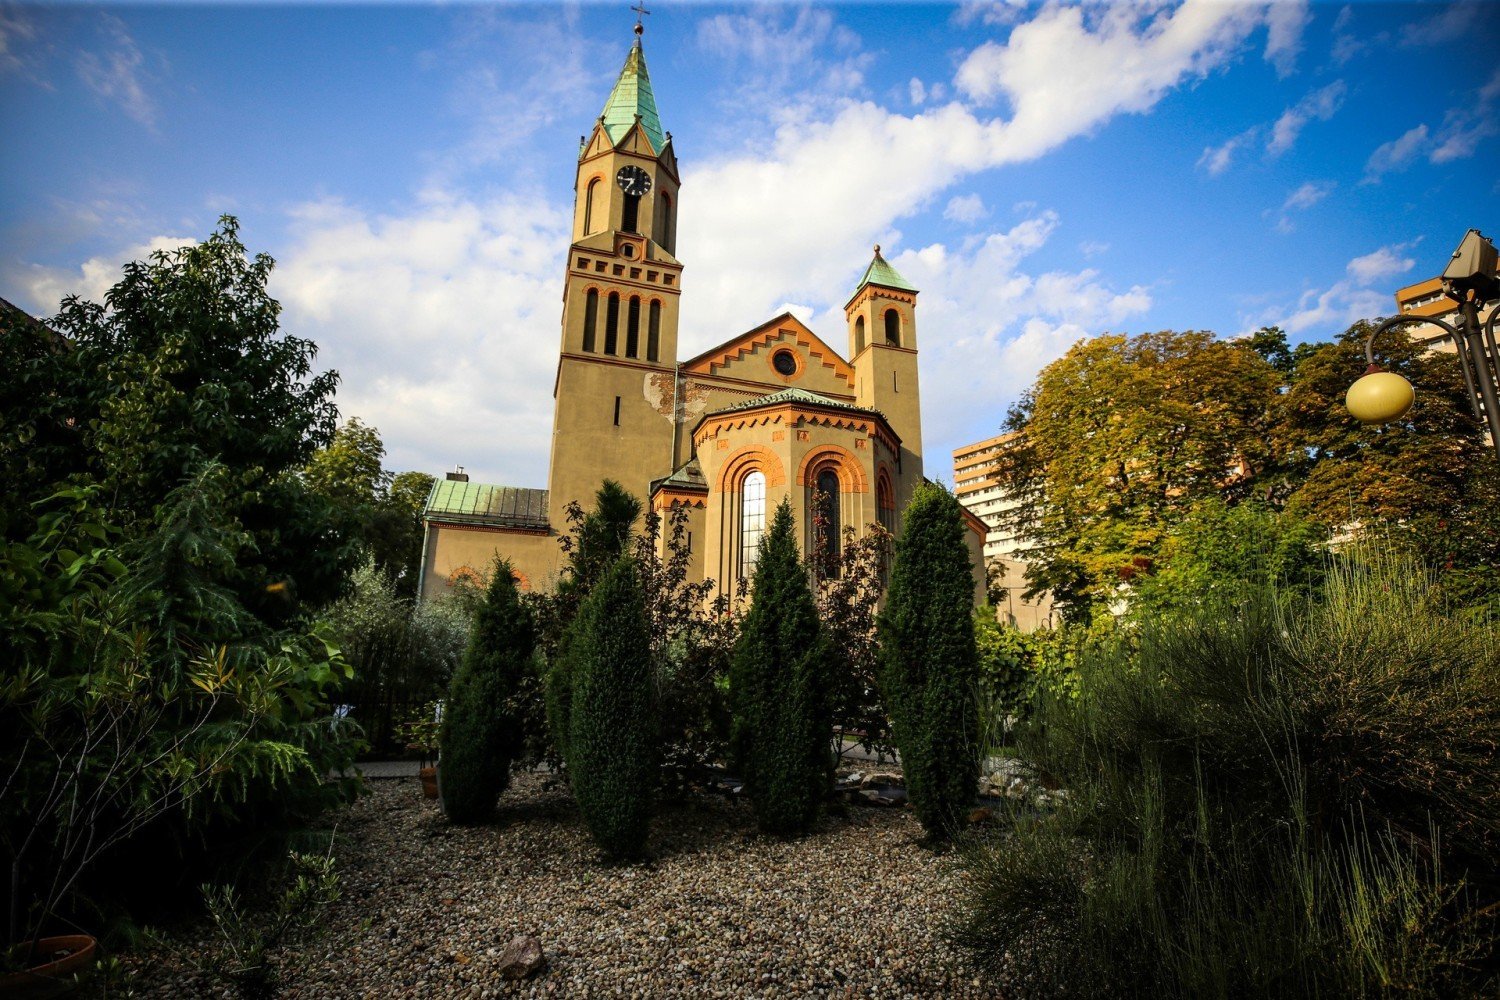 Ogród biblijny przy parafii św. Jadwigi w Chorzowie. Spokój, cisza i piękno  przyrody. Byliście już tutaj? | Chorzów Nasze Miasto